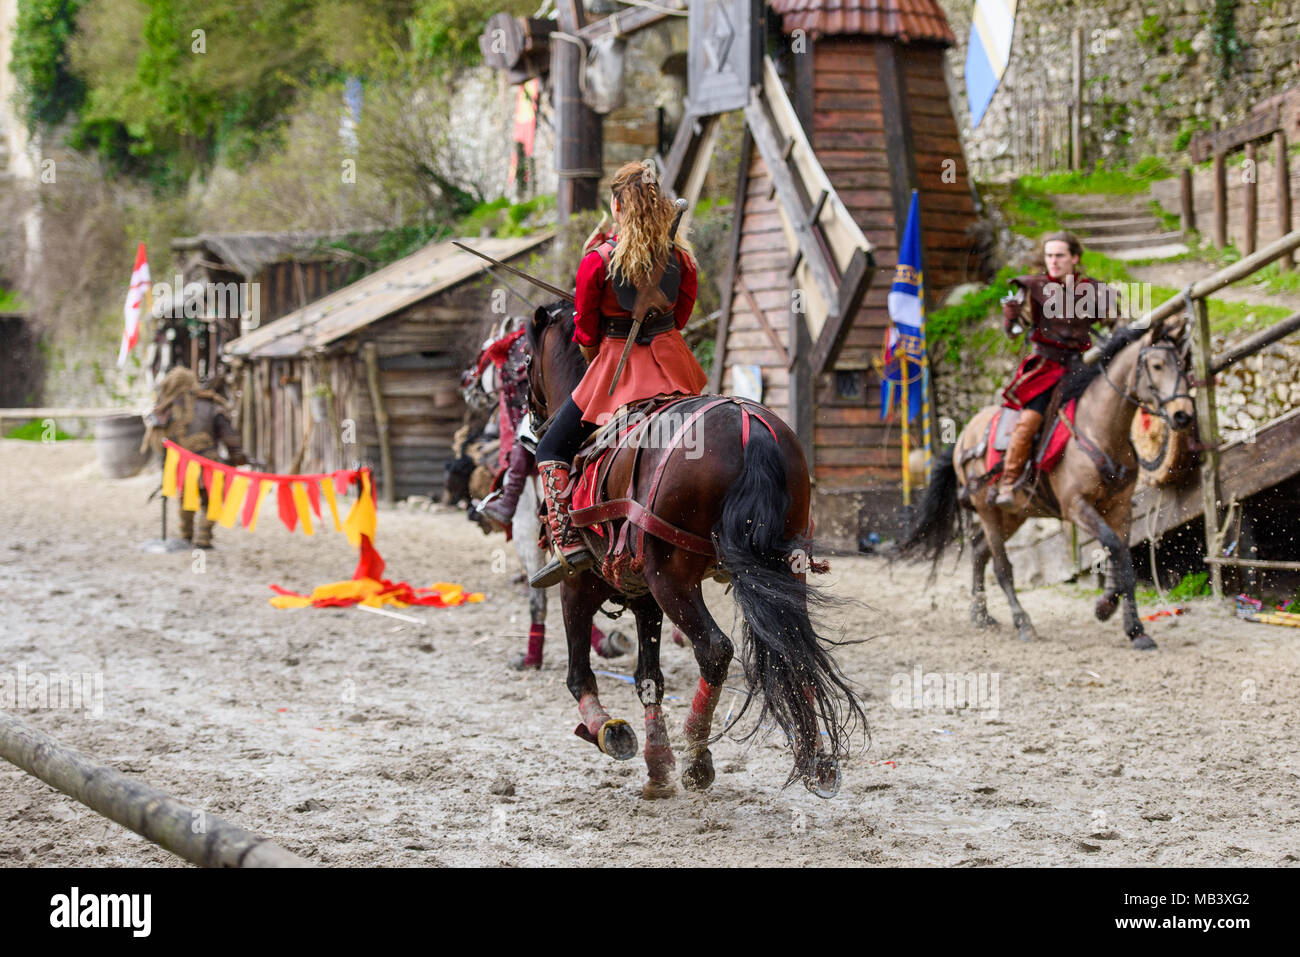 PROVINS, Frankreich - 31. MÄRZ 2018: die Unbekannte schöne Mädchen mit einem Schwert auf einem Pferd während der Schlacht um das Reich im mittelalterlichen Wiederaufbau Stockfoto